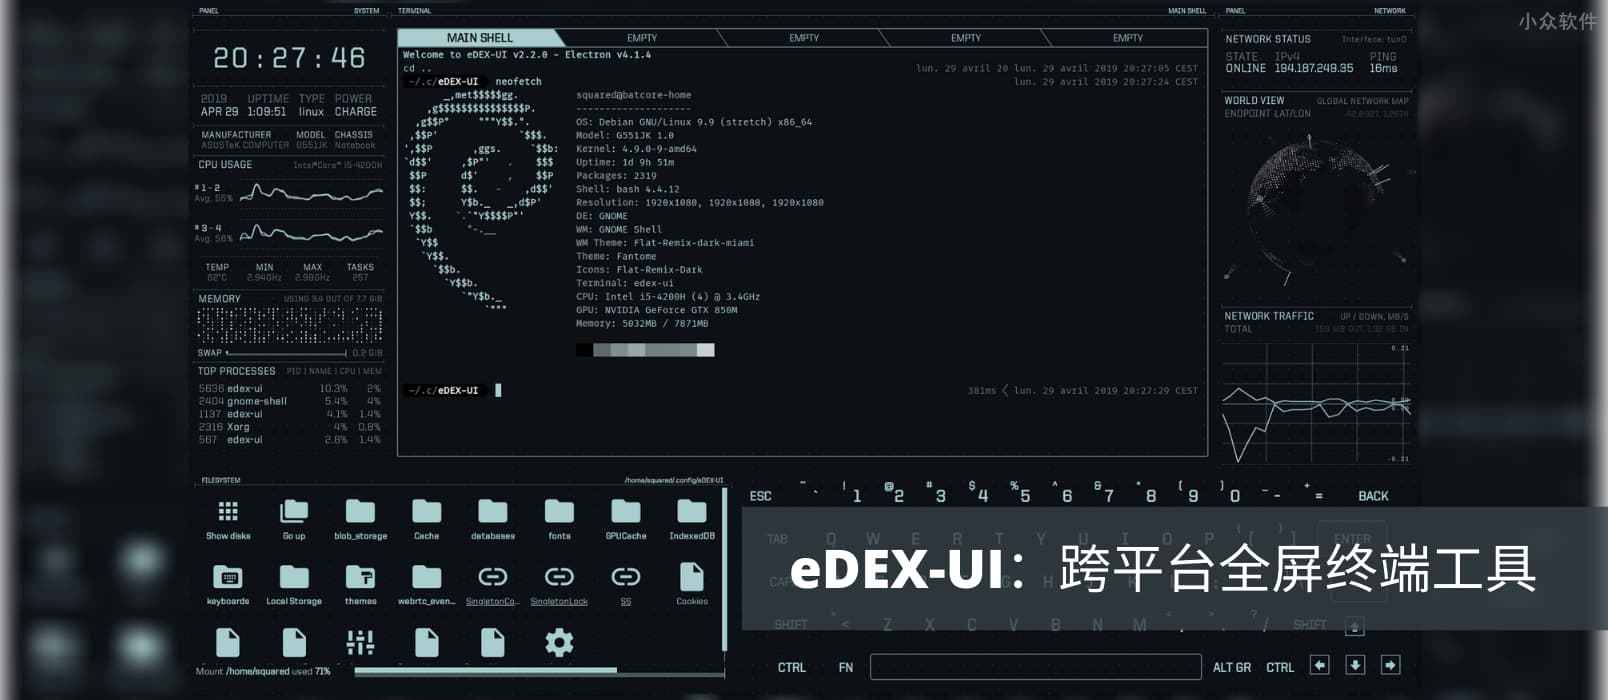 eDEX-UI – 炫酷的跨平台全屏终端工具，可直接拿去拍电影